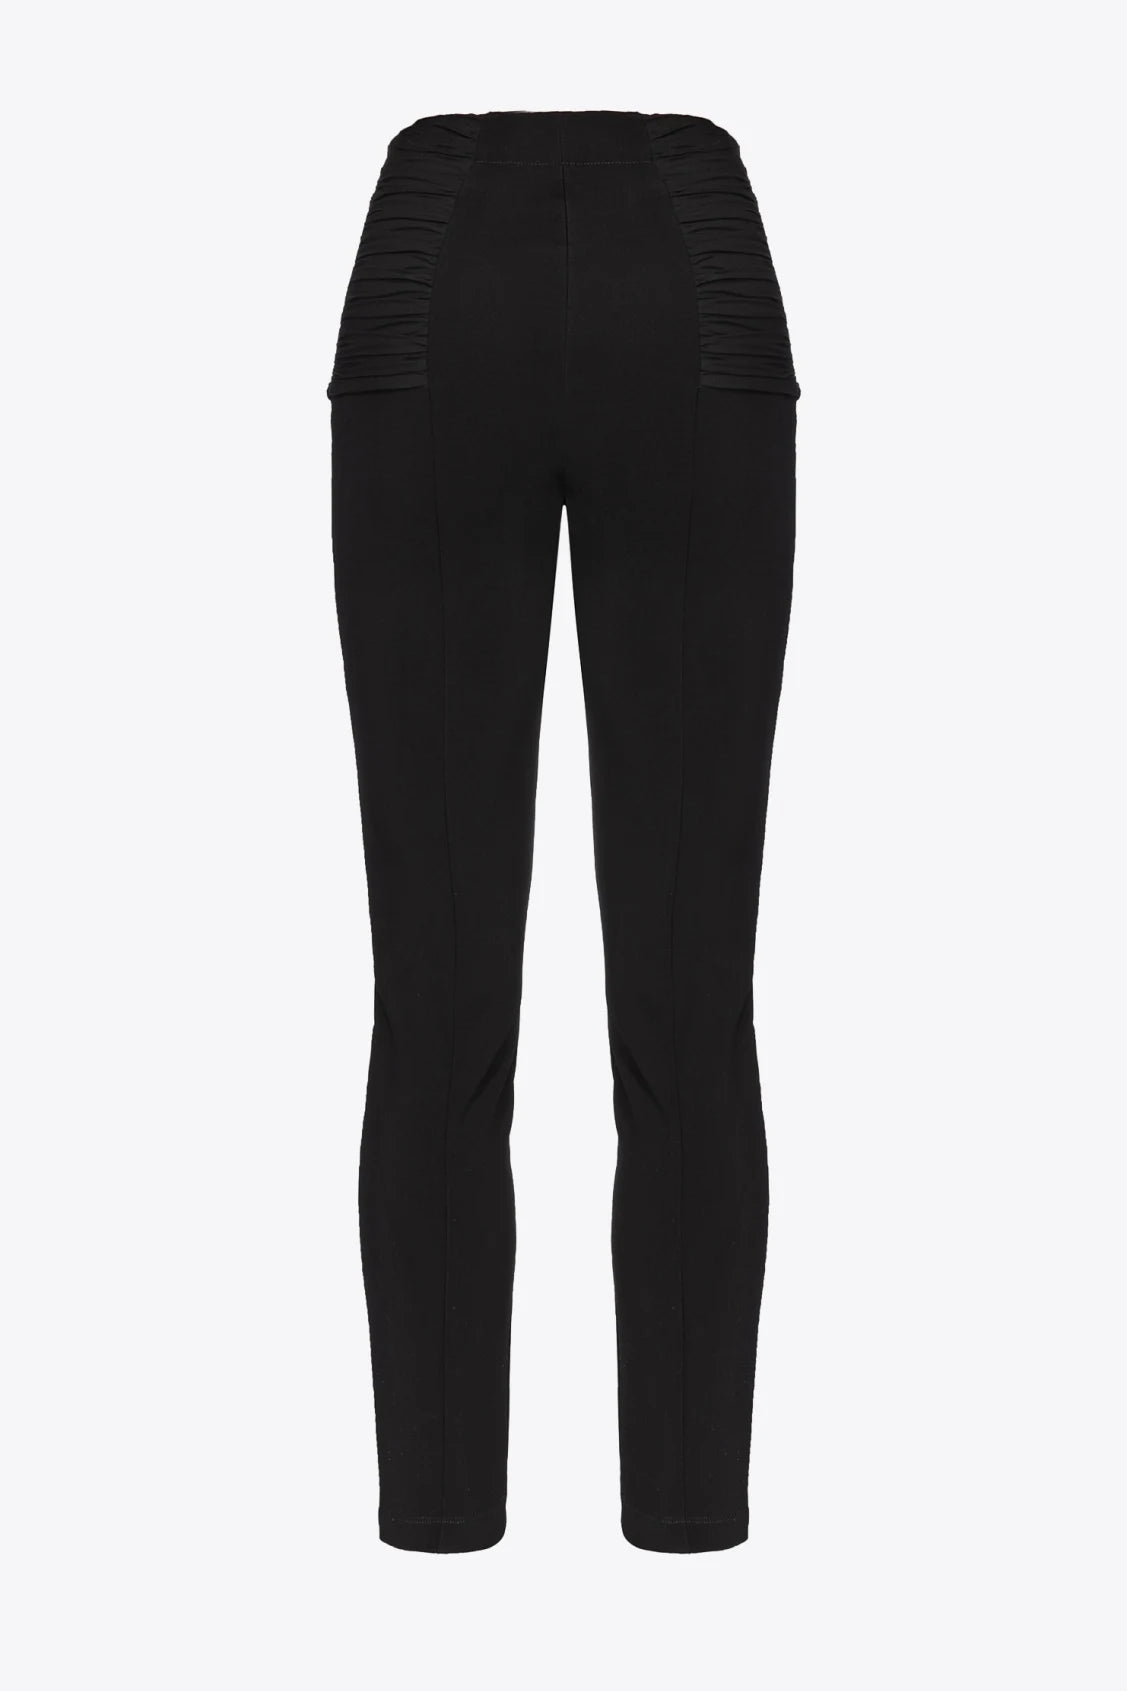 Pantalone Aderente con Zip / Nero - Ideal Moda